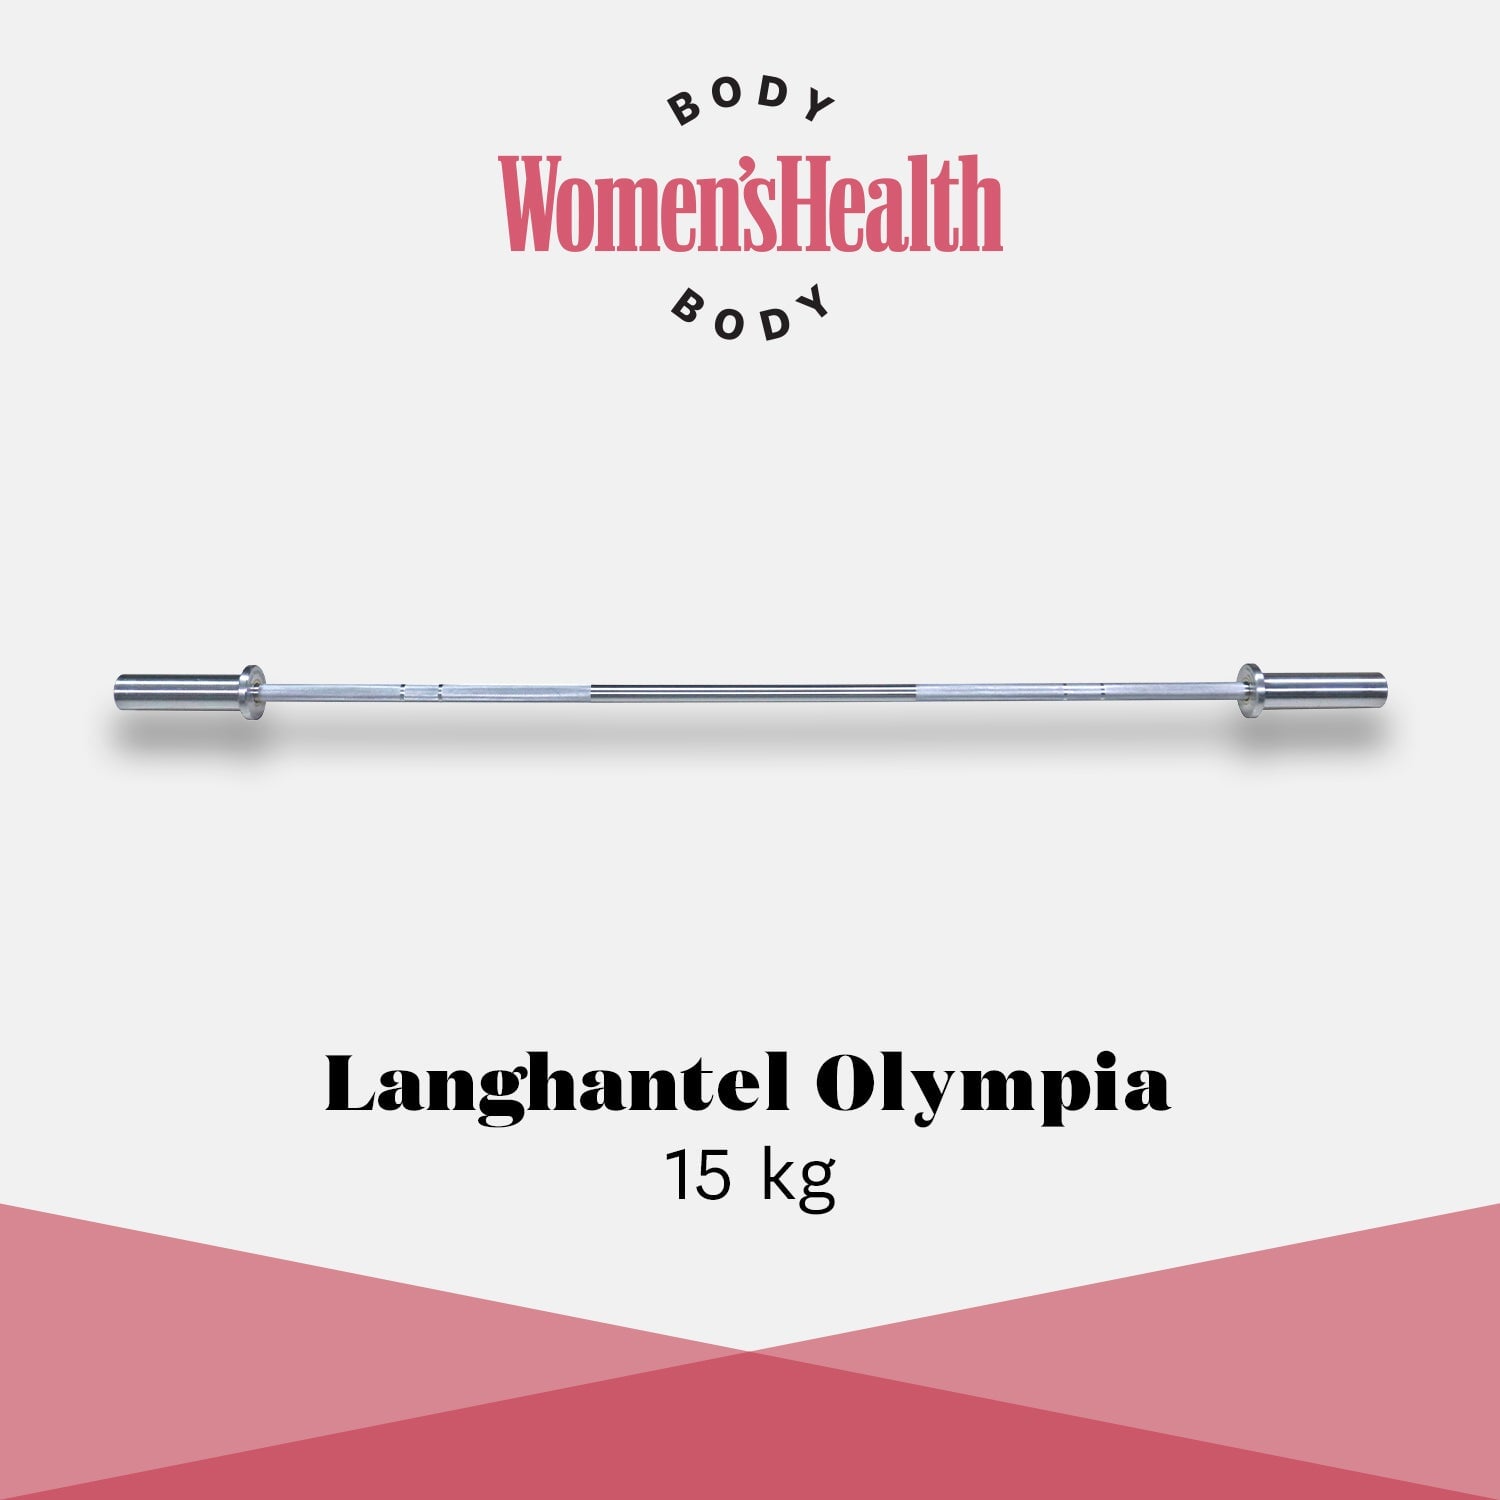 Bilanciere Olympia (15 kg) per la salute delle donne 